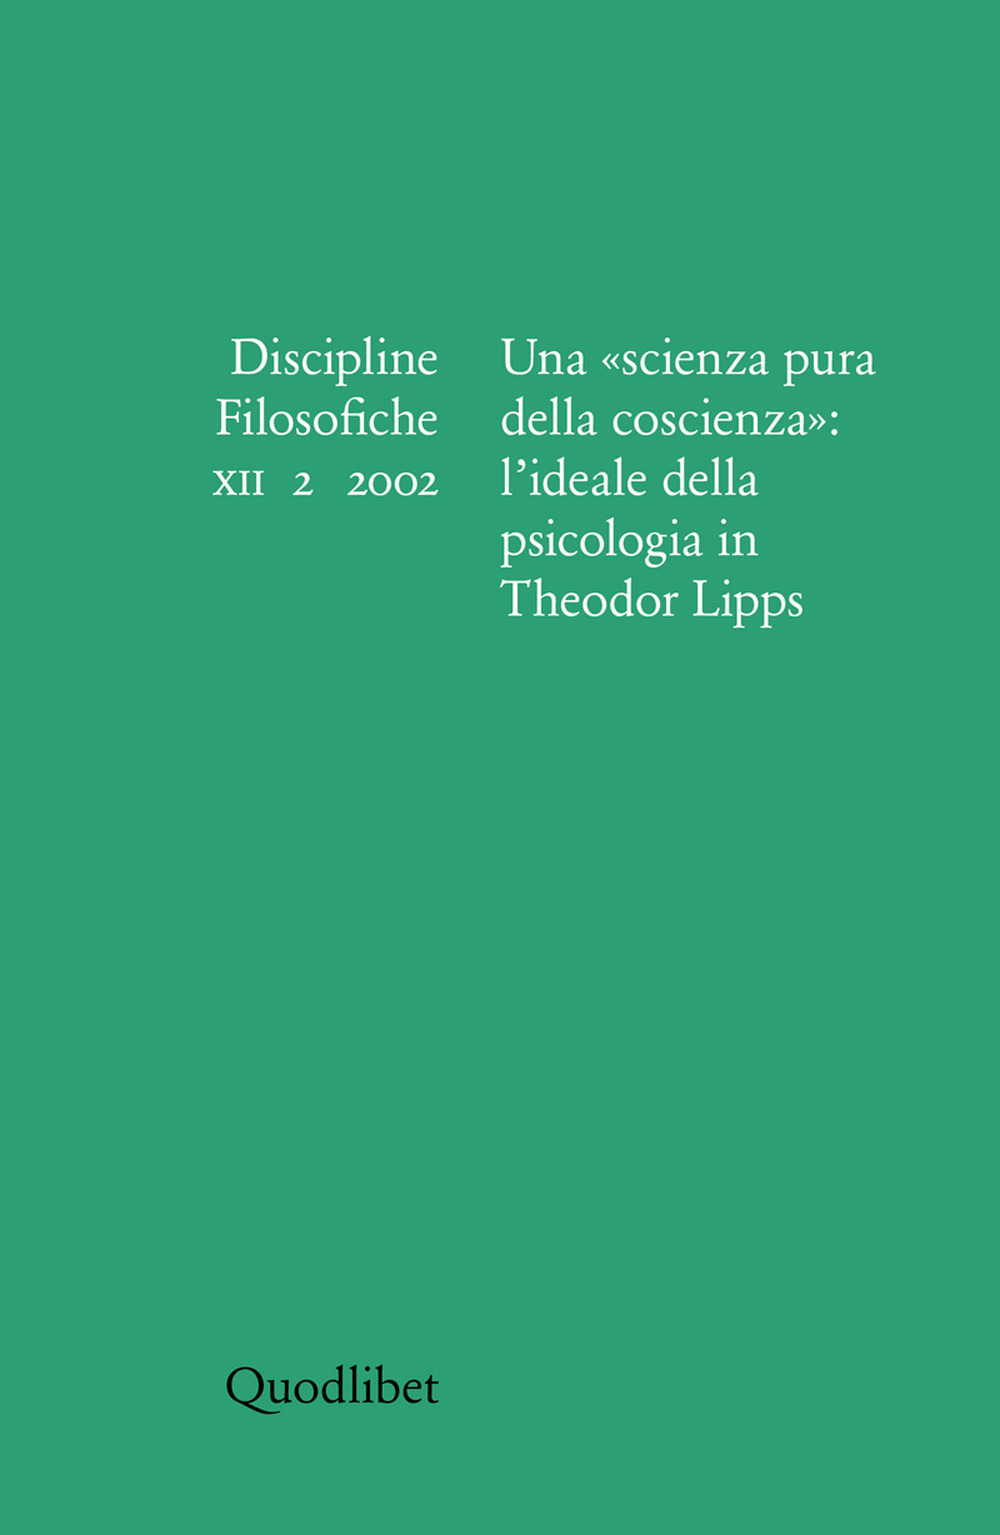 Discipline filosofiche (2002). Vol. 2: Una «scienza pura della coscienza»: l'ideale della psicologia in Theodor Lipps